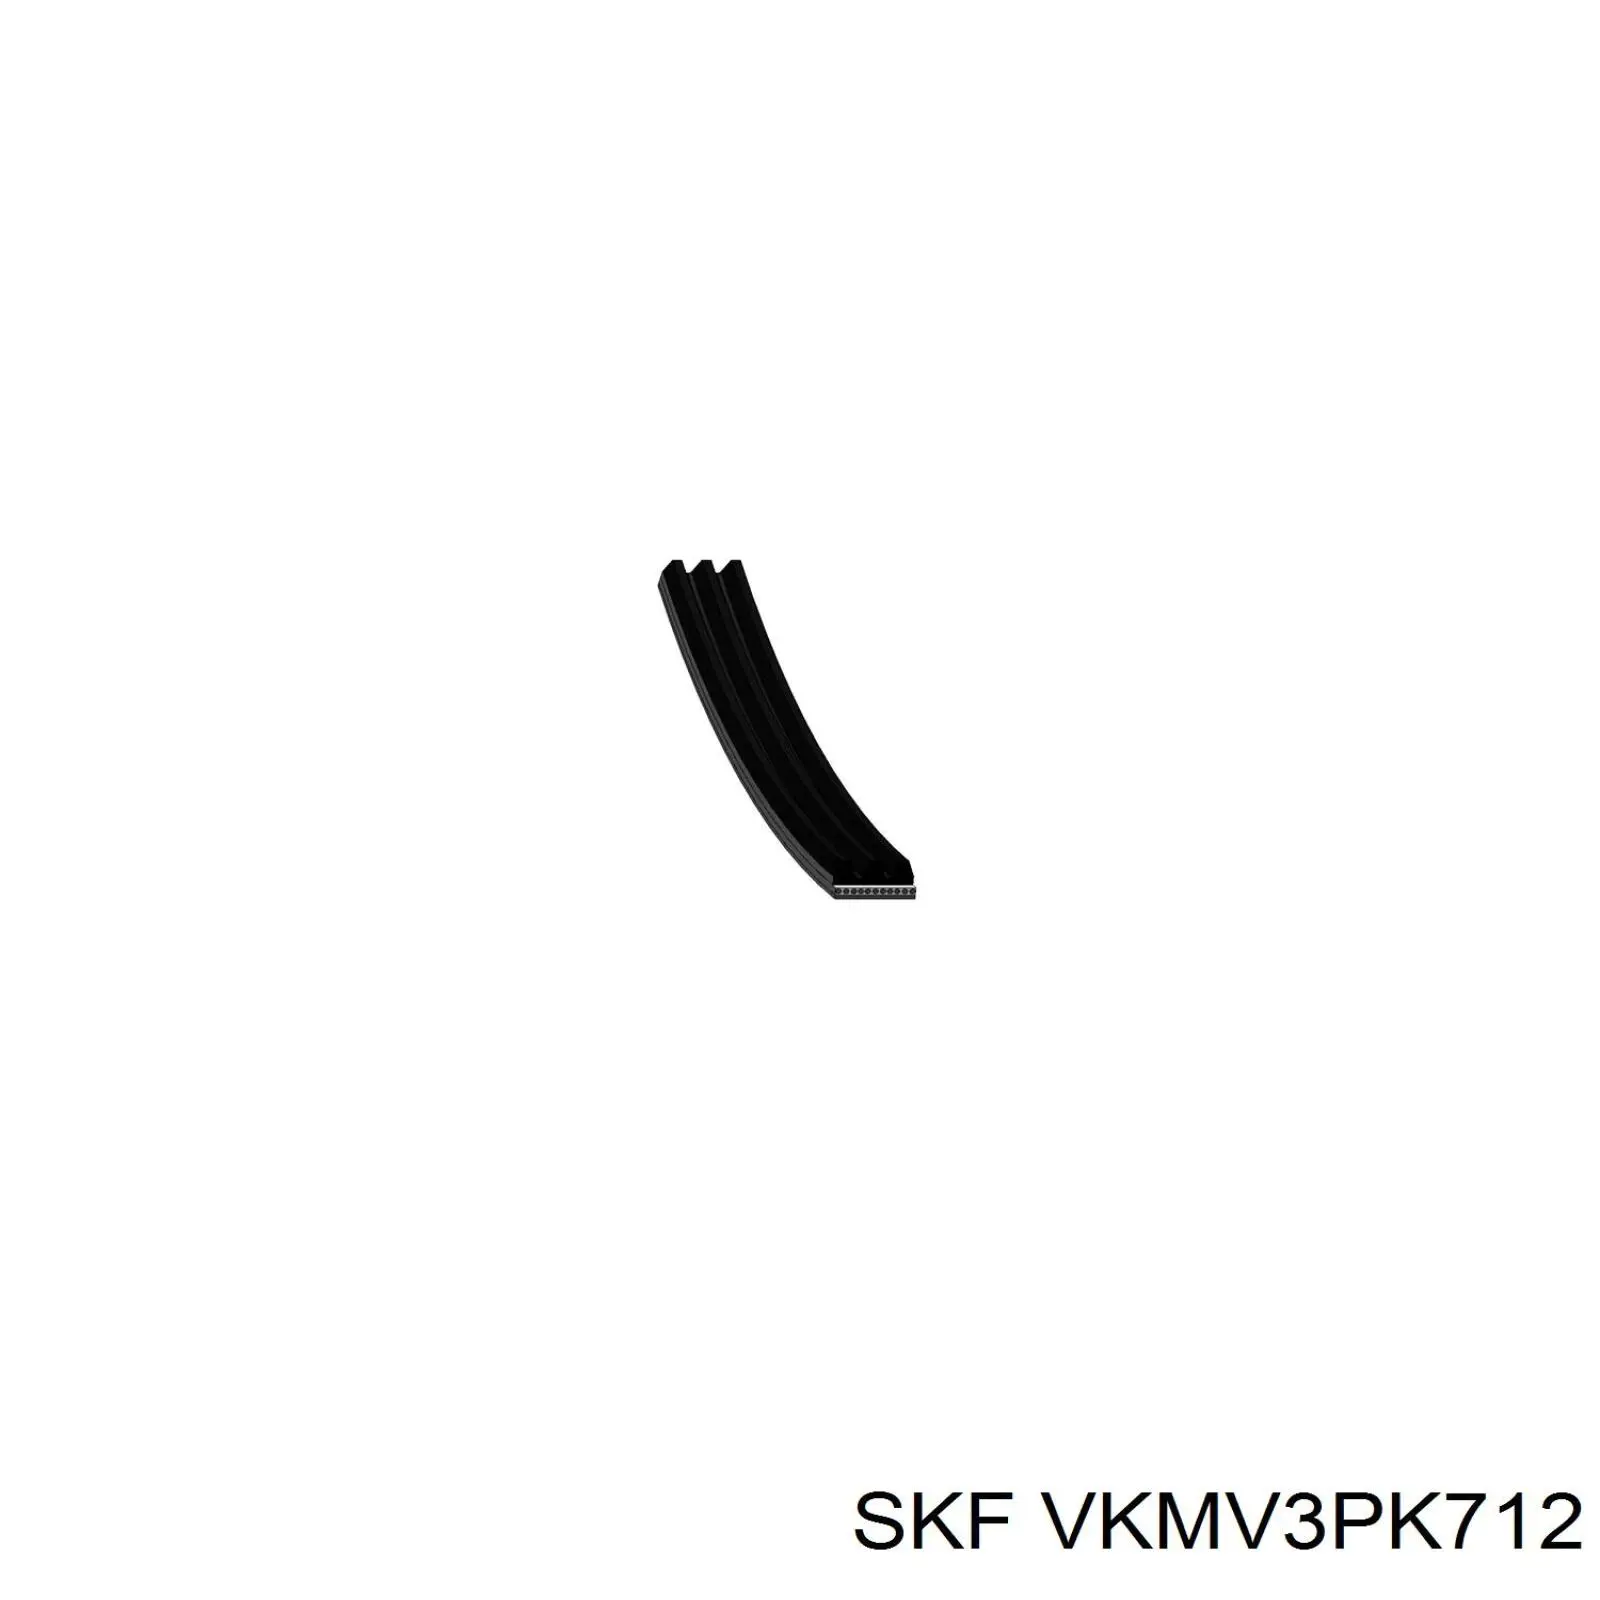 VKMV3PK712 SKF correa trapezoidal